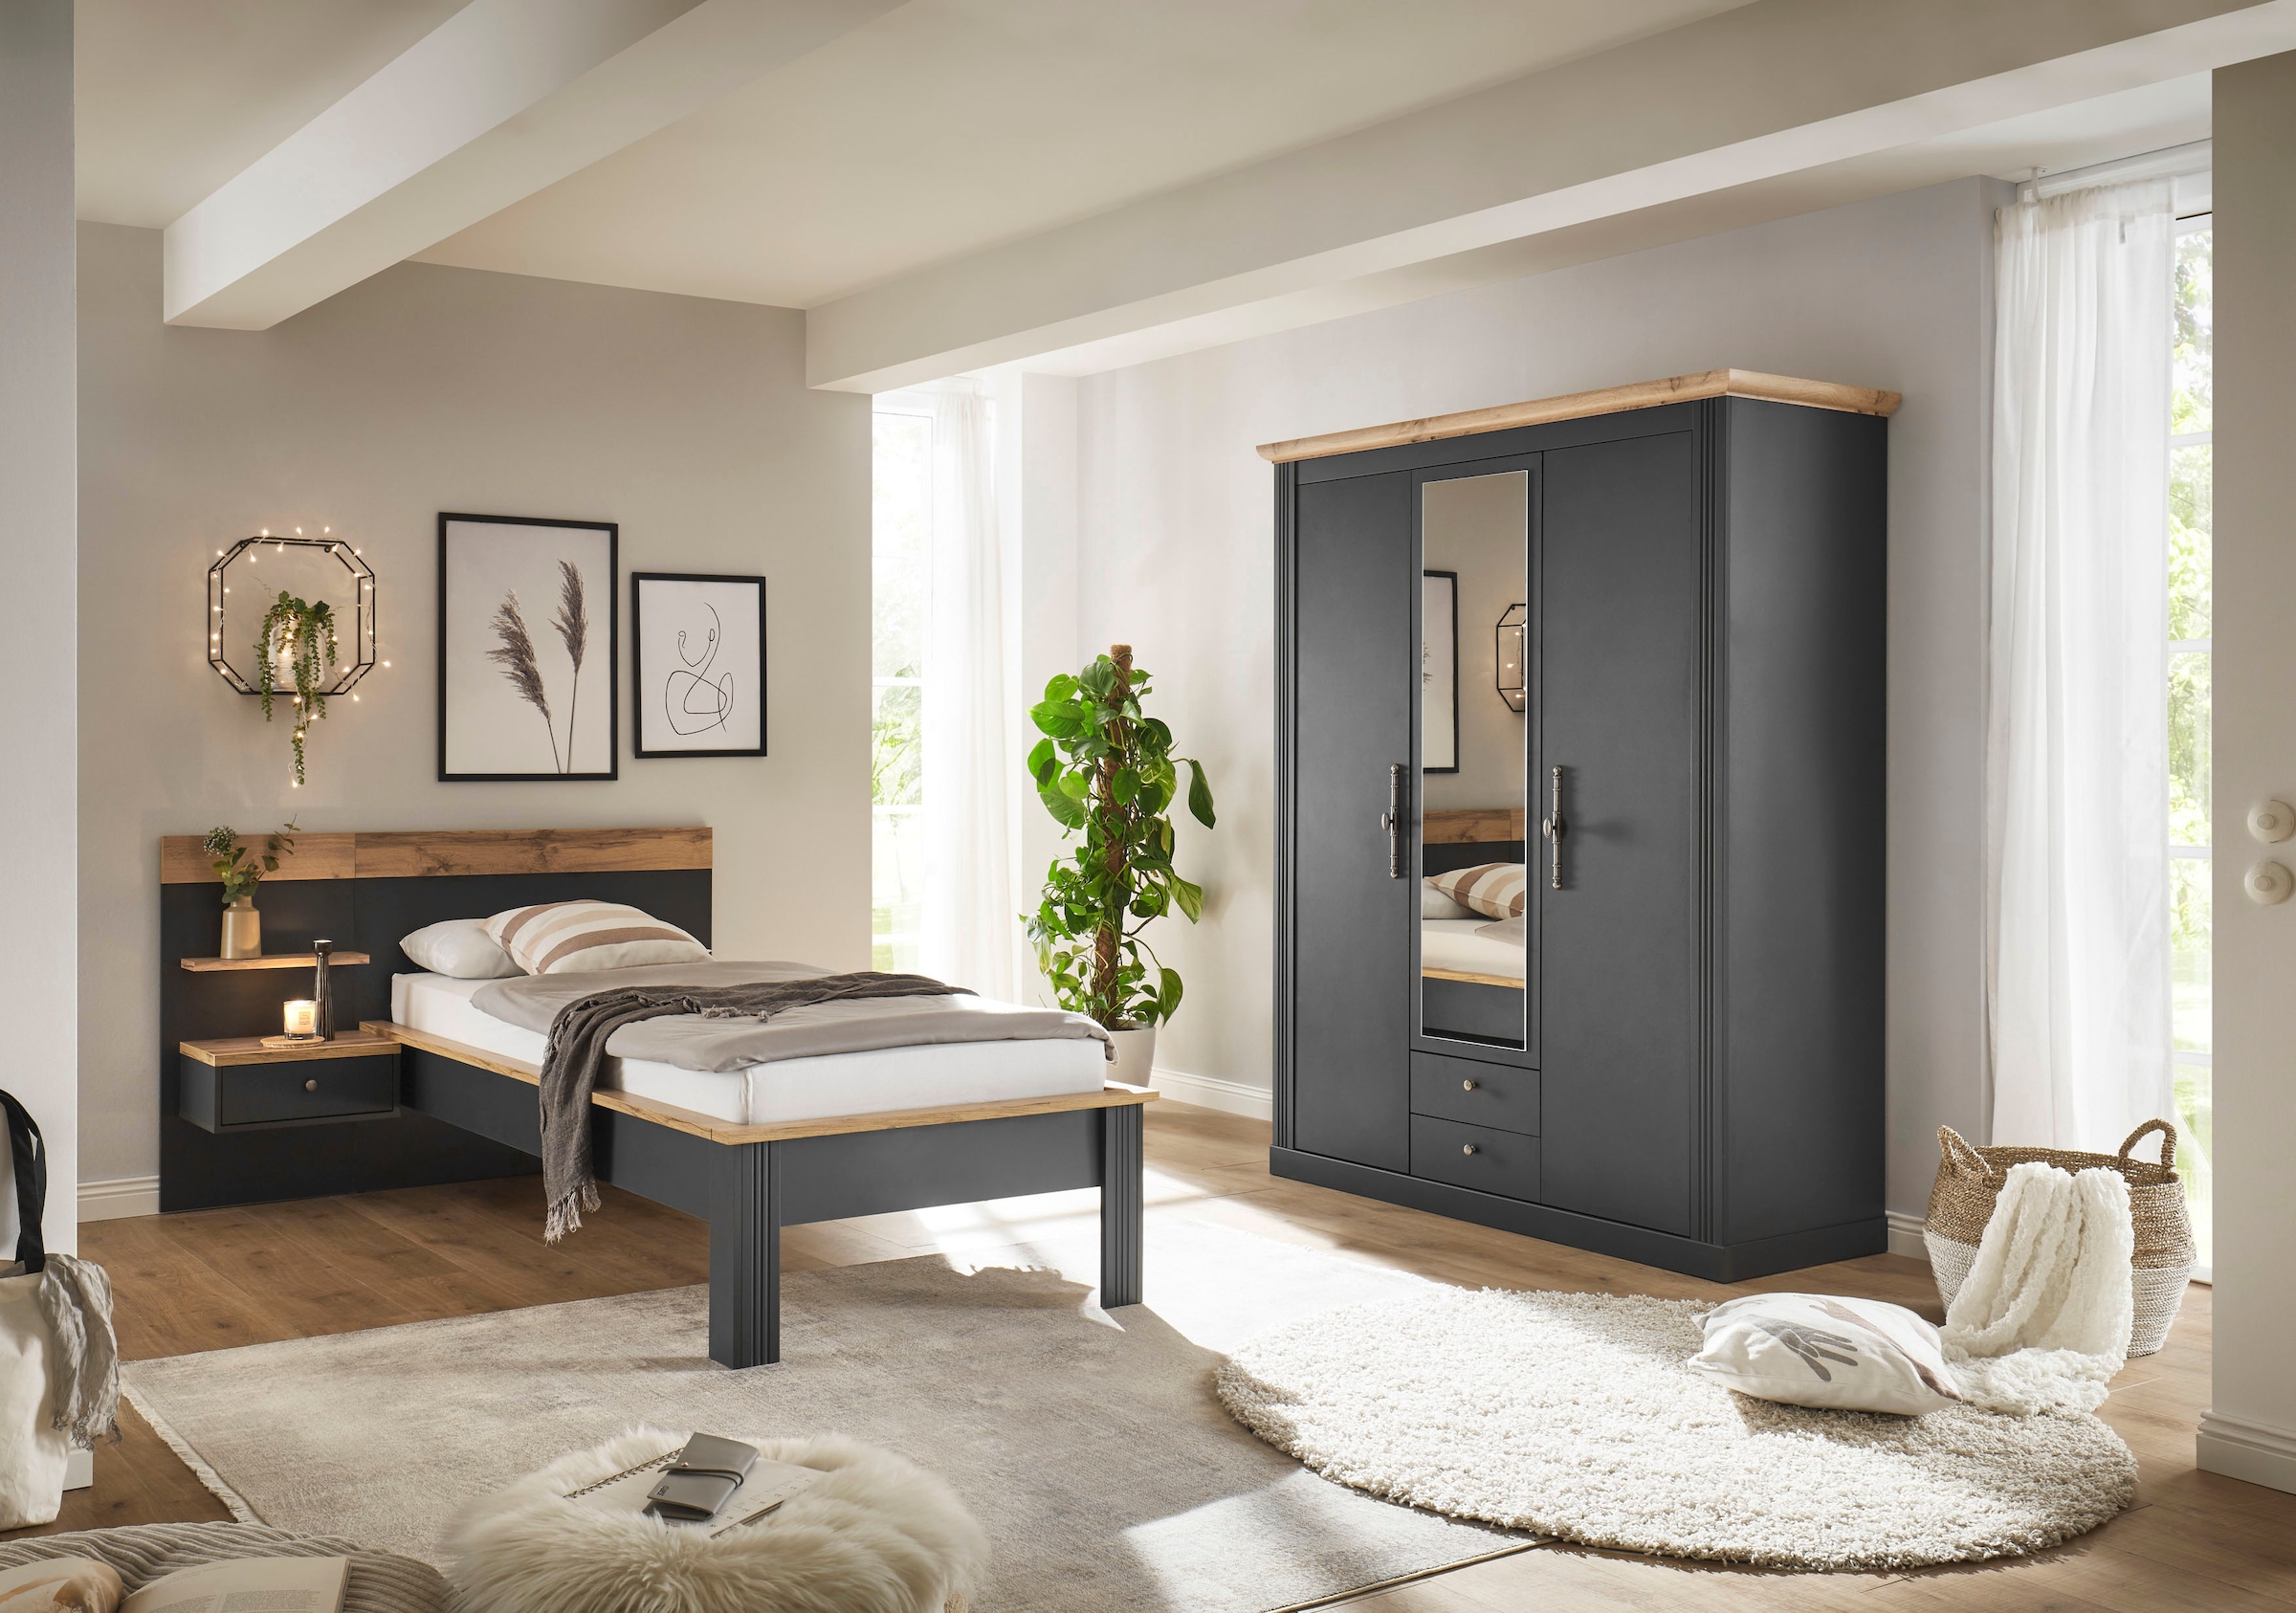 Home affaire Schlafzimmer-Set »Westminster«, beinhaltet 1 Bett, Kleiderschrank 3-türig und 1 Wandpaneel